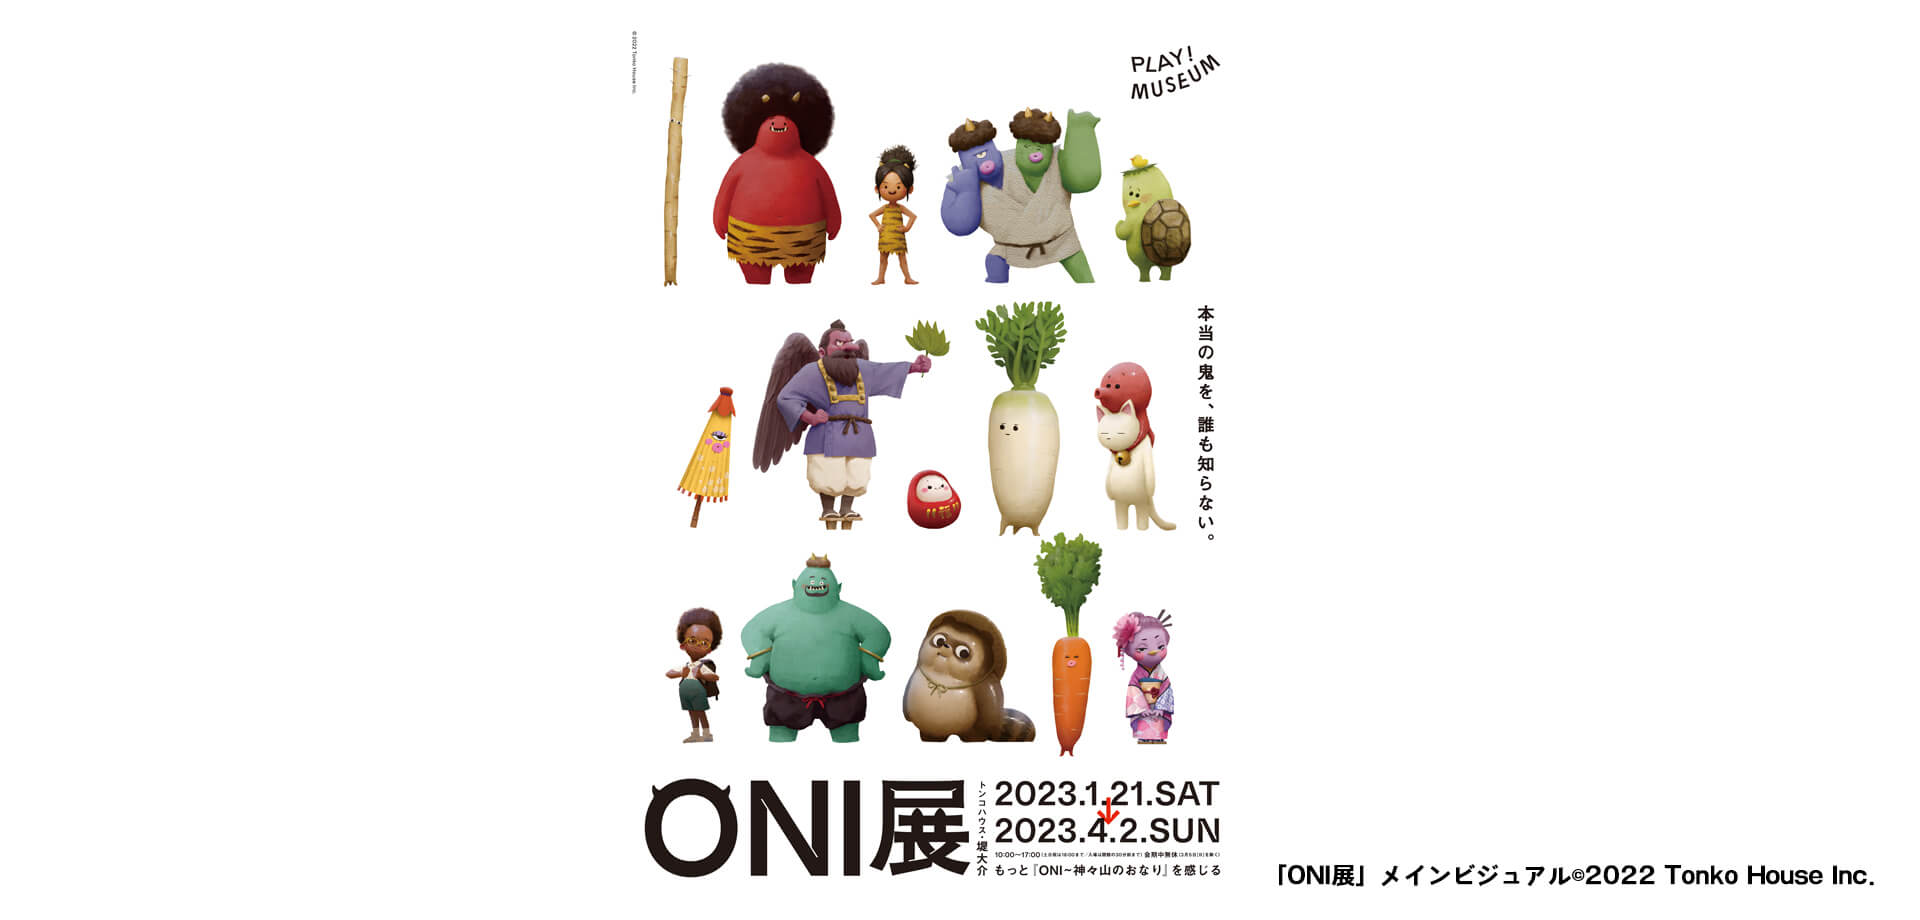 トンコハウス・堤大介の「ONI 展」PLAY!